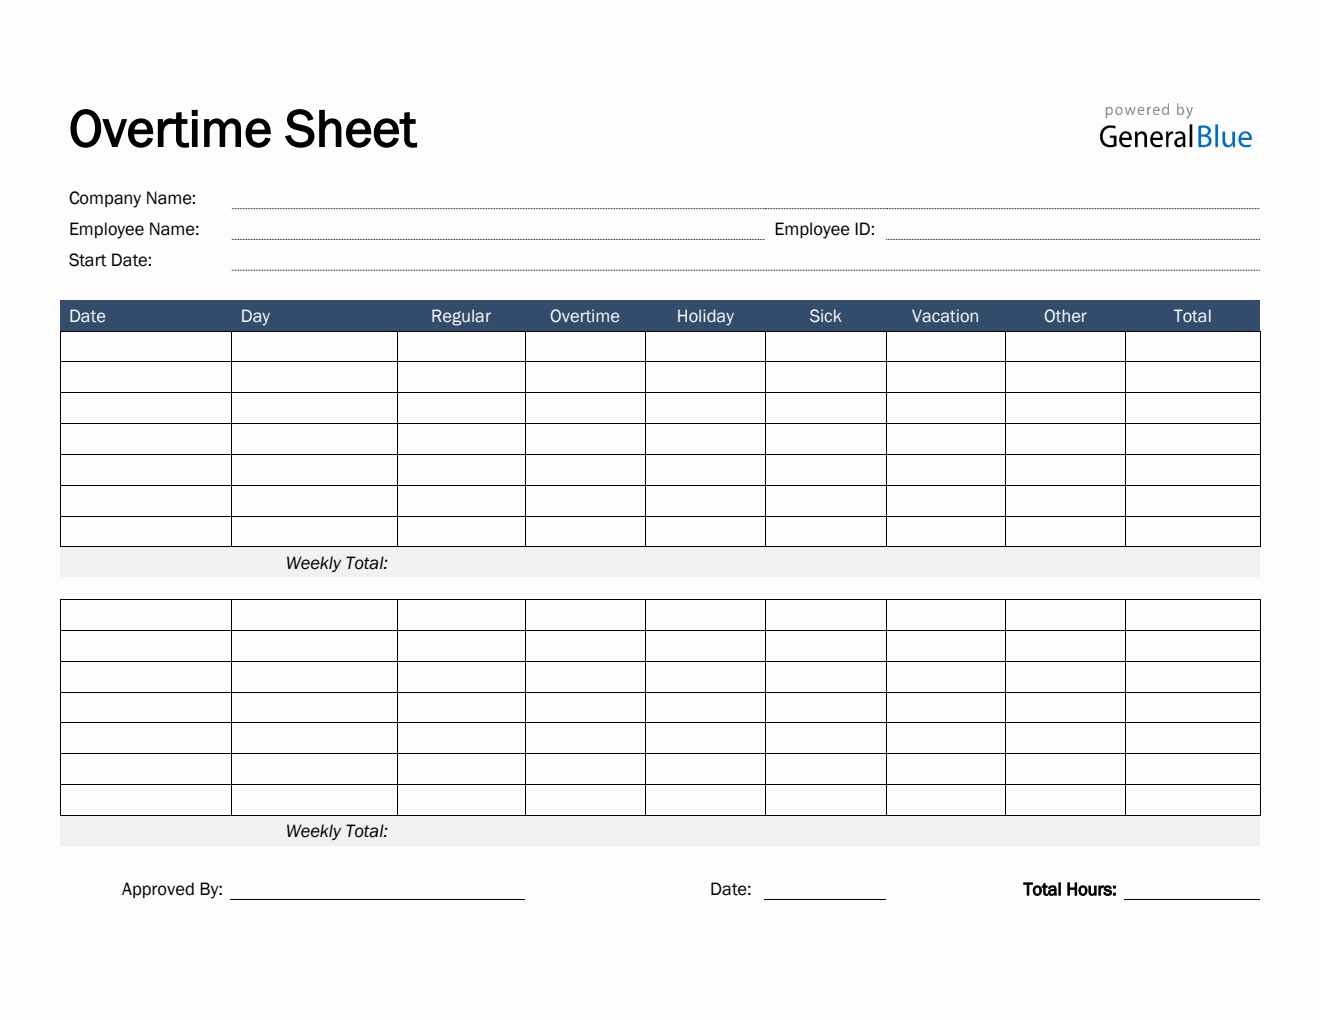 Overtime Sheet in Word (Basic)